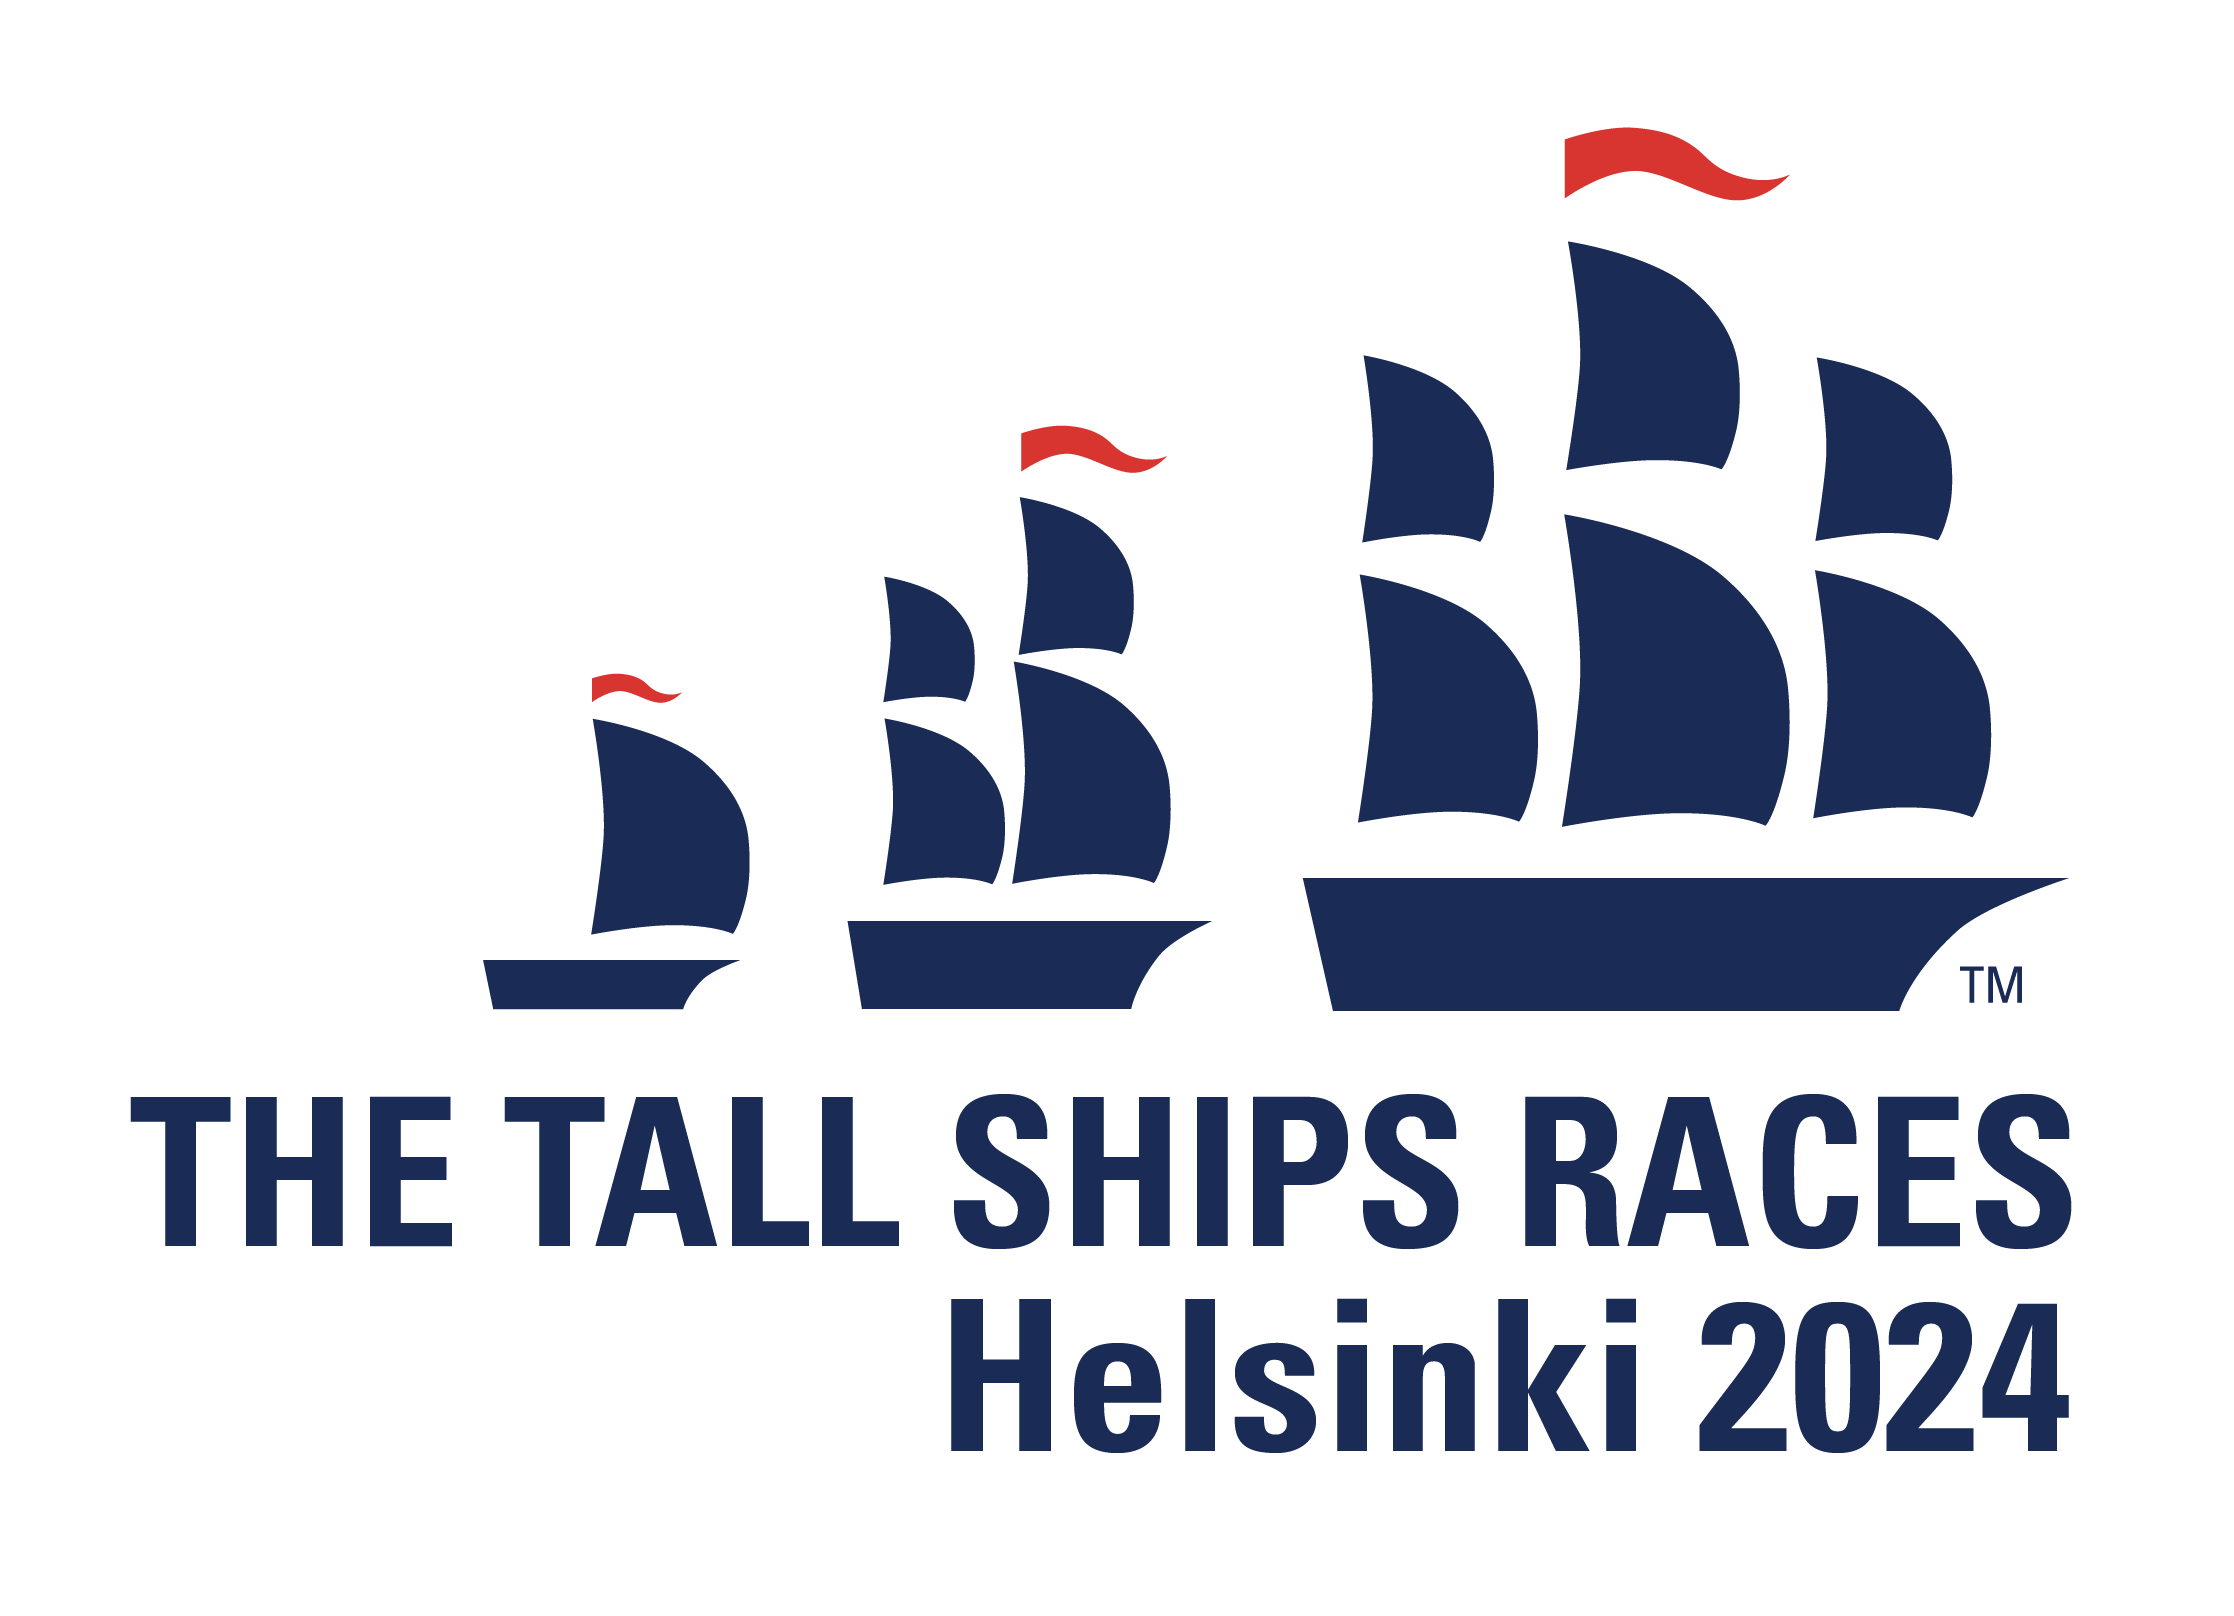 Tall Ships Races Helsinki 2024